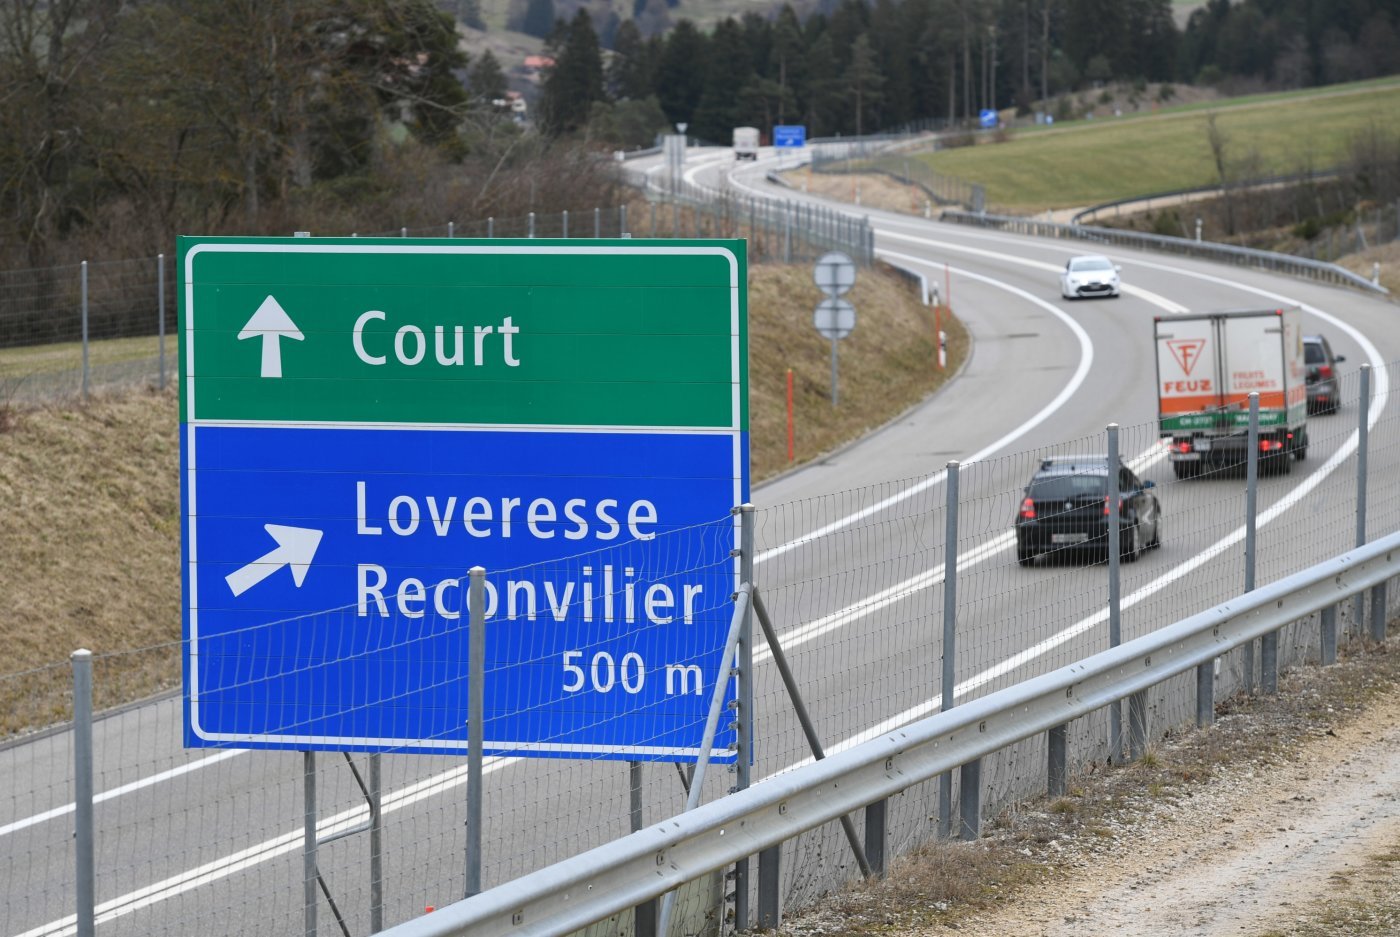 L'autoroute A16 sera fermée entre les jonctions de Tavannes et Loveresse en début de semaine prochaine.